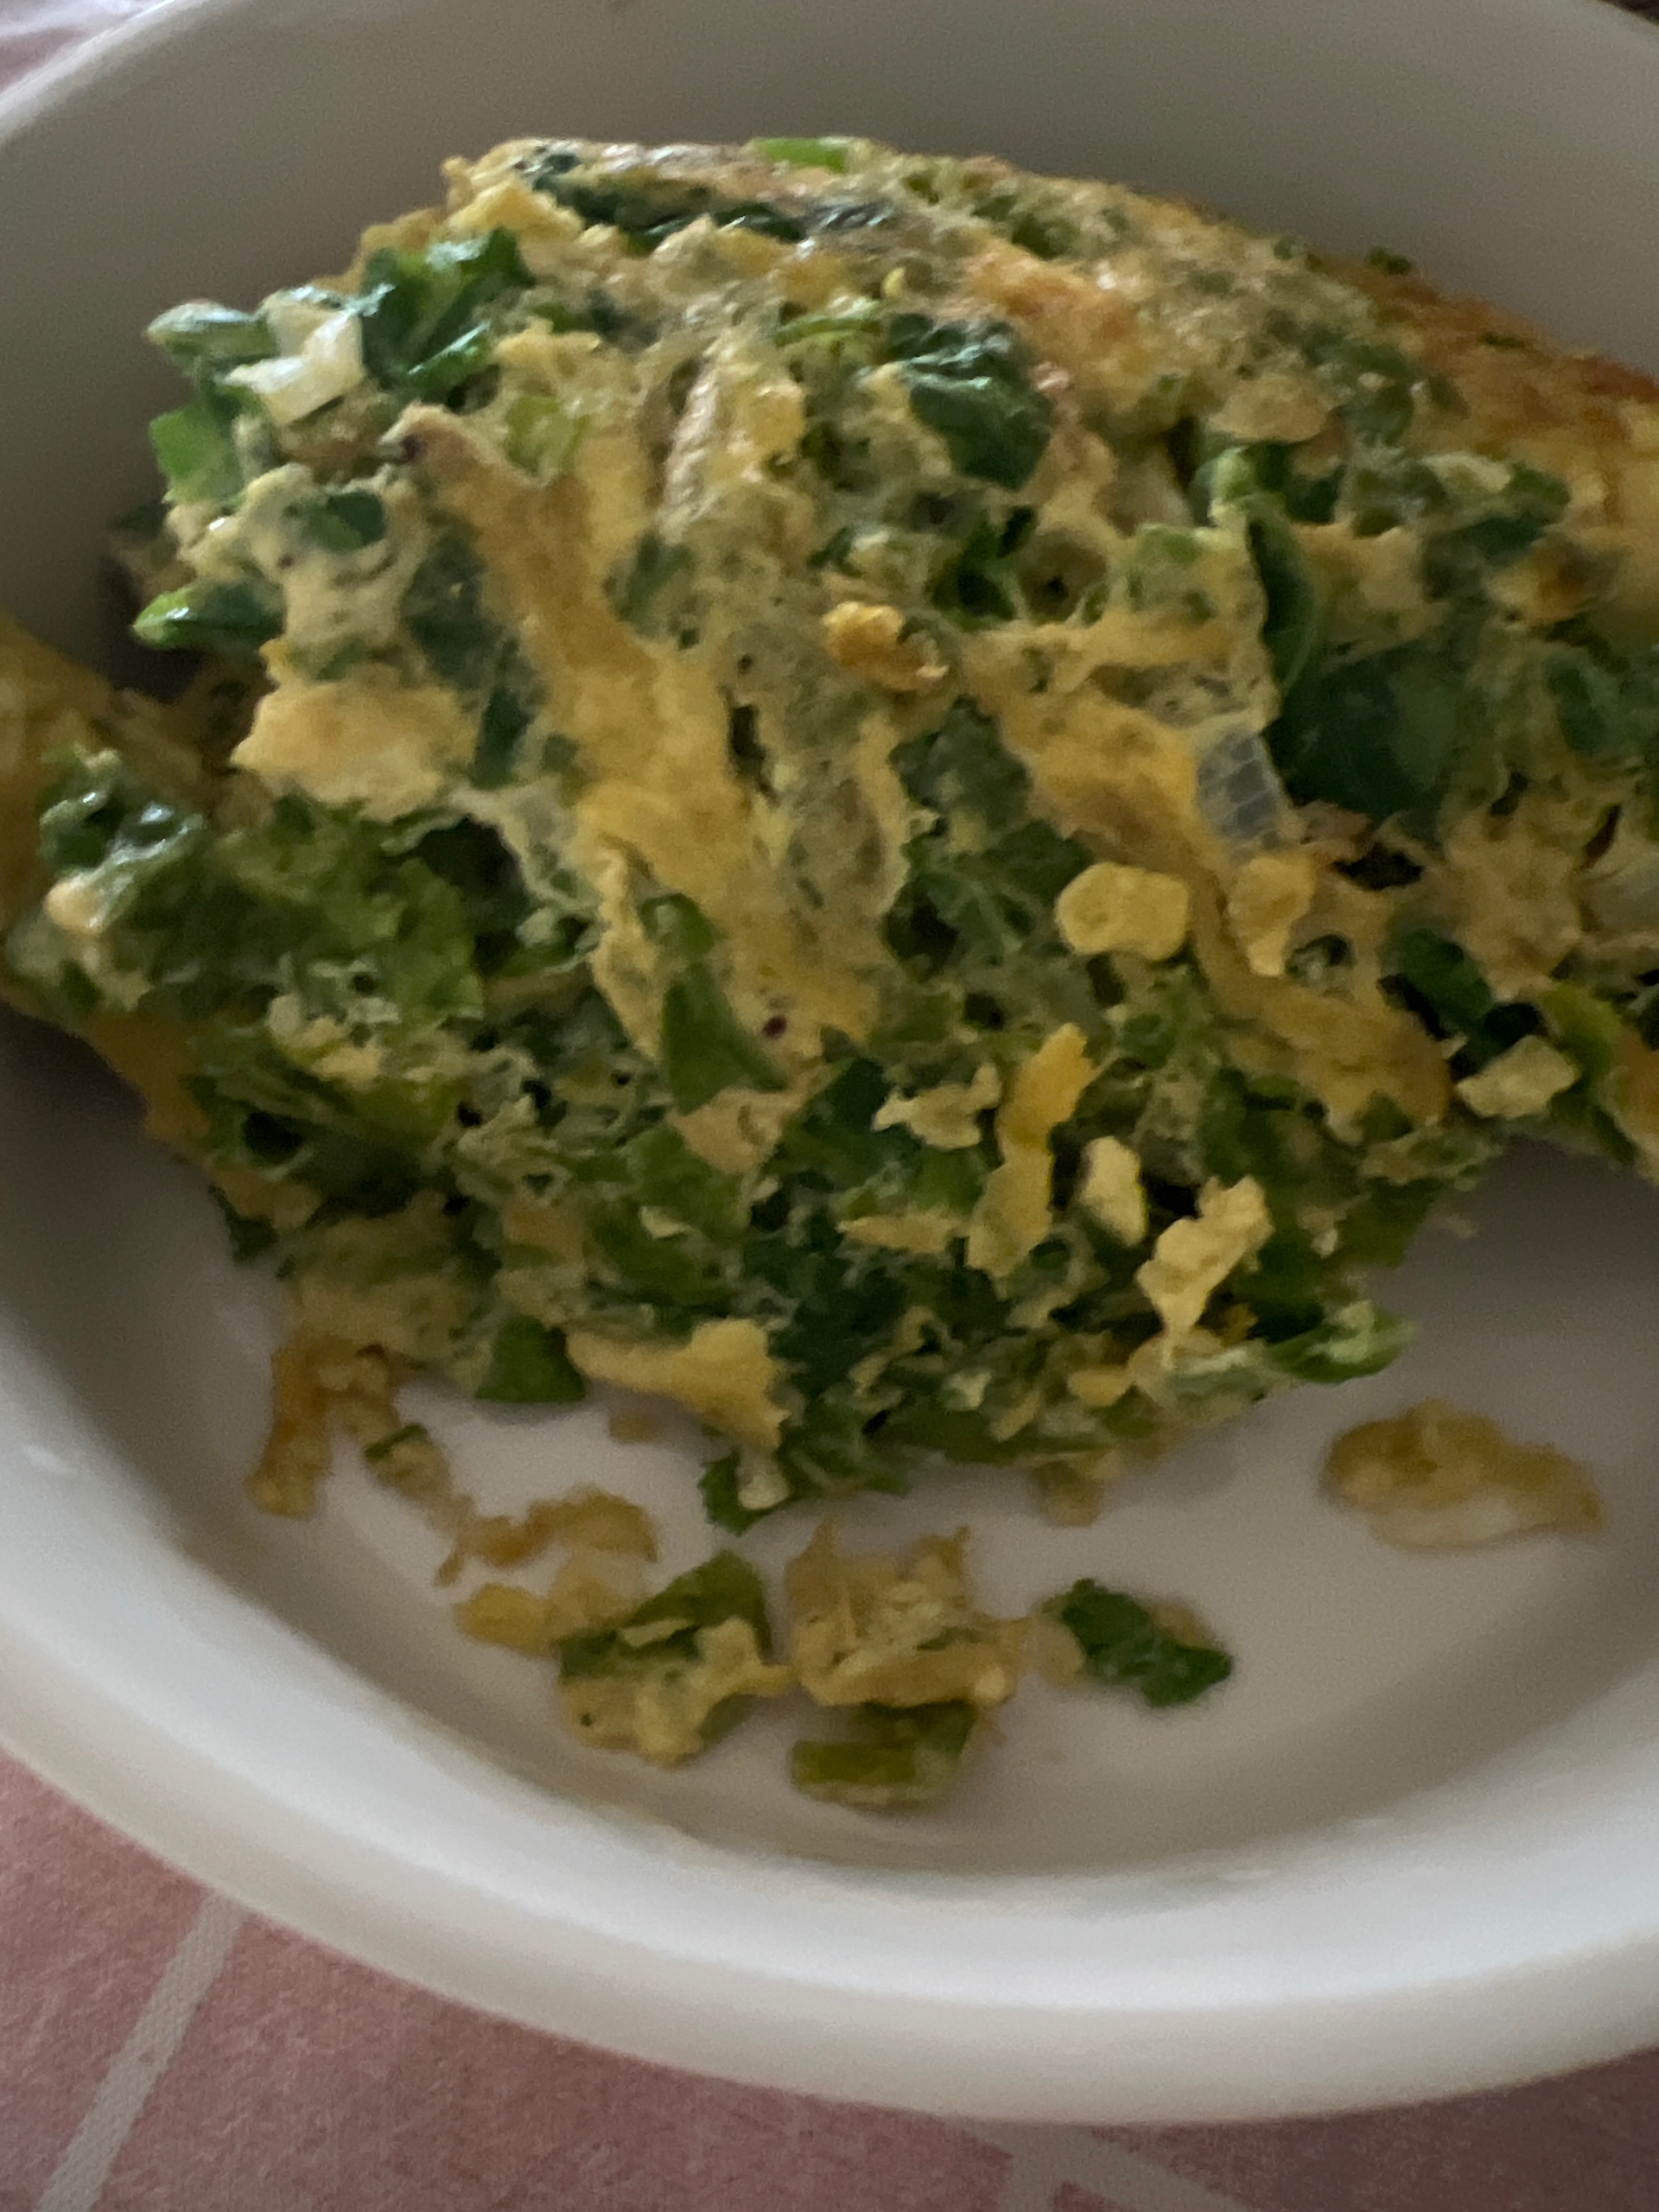 美国版香椿炒蛋：羽衣甘蓝炒鸡蛋，这下你不会嫌Kale难吃了！